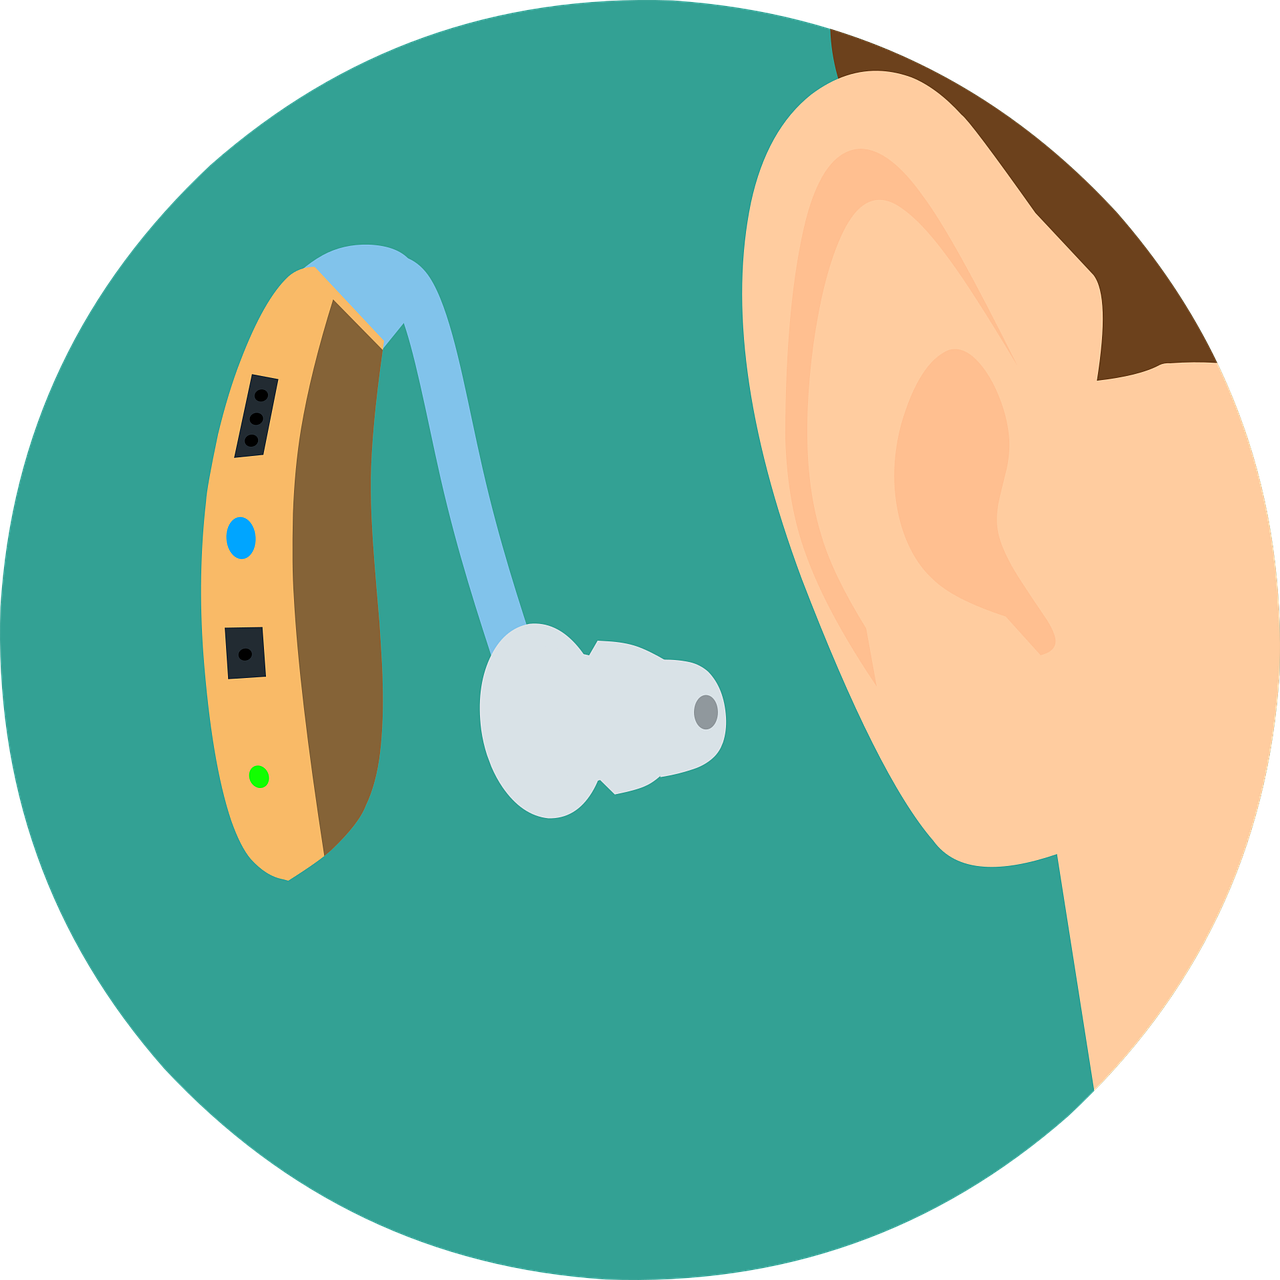 Ova slika prikazuje slušni aparat koji je postavljen blizu ljudskog uha. Slušni aparat je bež boje s plavom žicom koja se spaja s bijelim umetkom za uho.